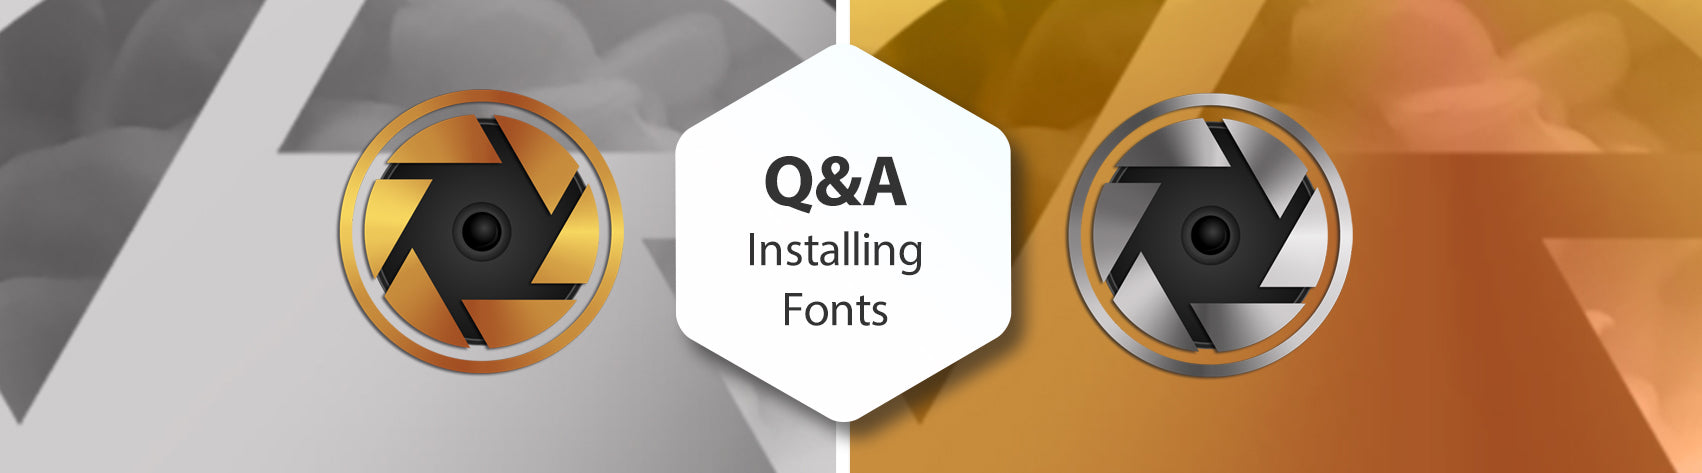 Q&A Installing Fonts